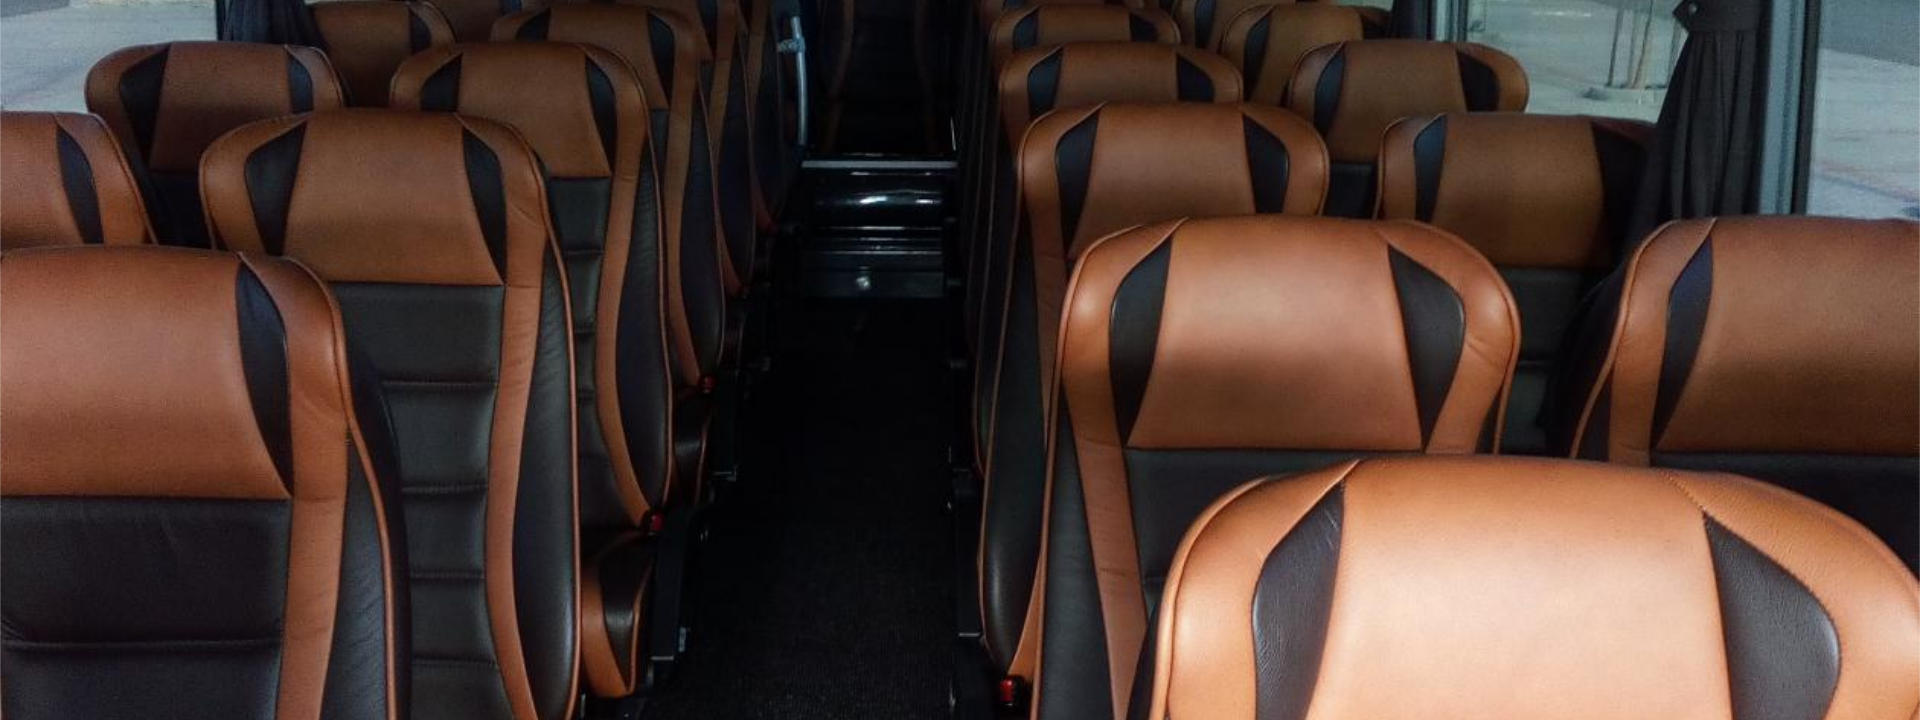 Všechny naše autobusy mají nadstandardní výbavu a interiér přizpůsobený pro nejvyšší pohodlí cestujících.